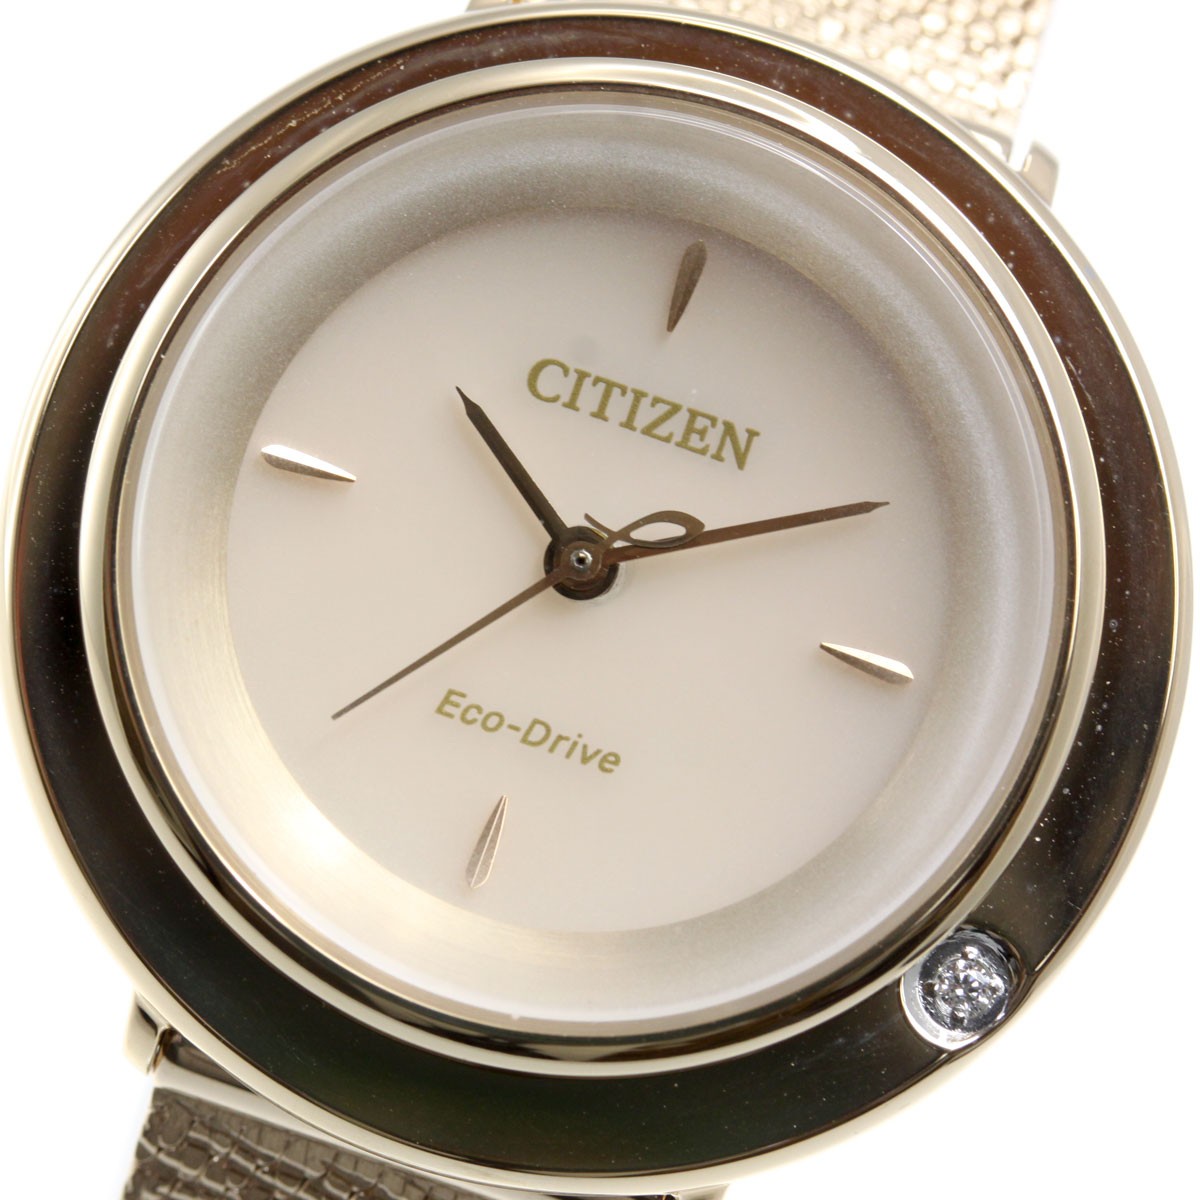 シチズン エル CITIZEN L エコドライブ 腕時計 レディース EM0643-92X 